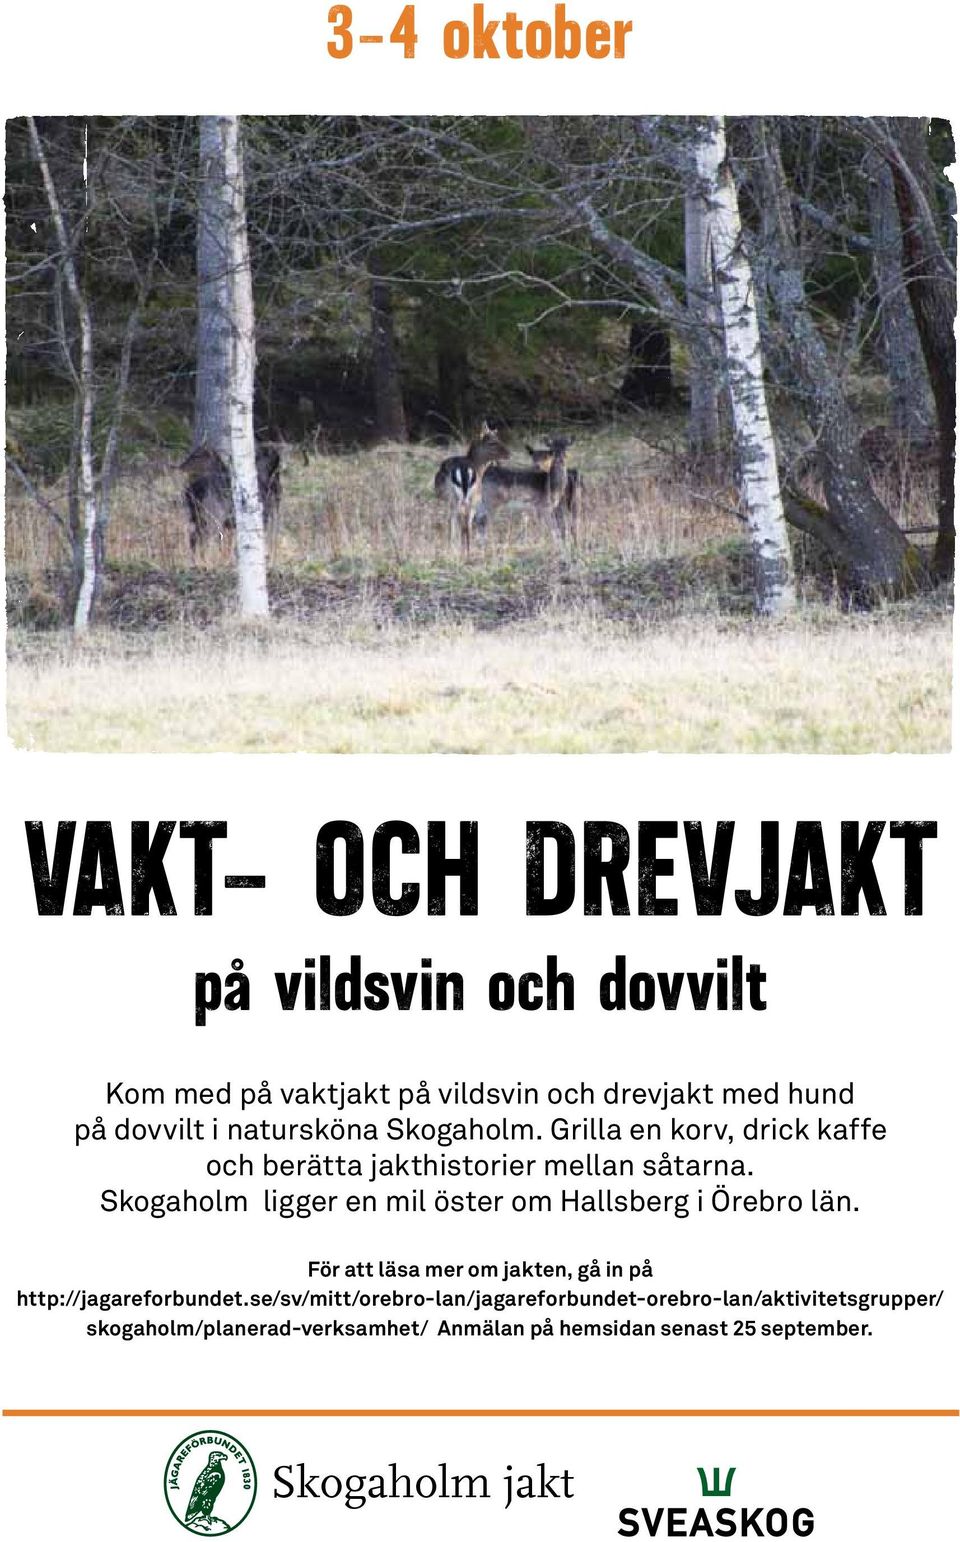 Skogaholm ligger en mil öster om Hallsberg i Örebro län. För att läsa mer om jakten, gå in på http://jagareforbundet.